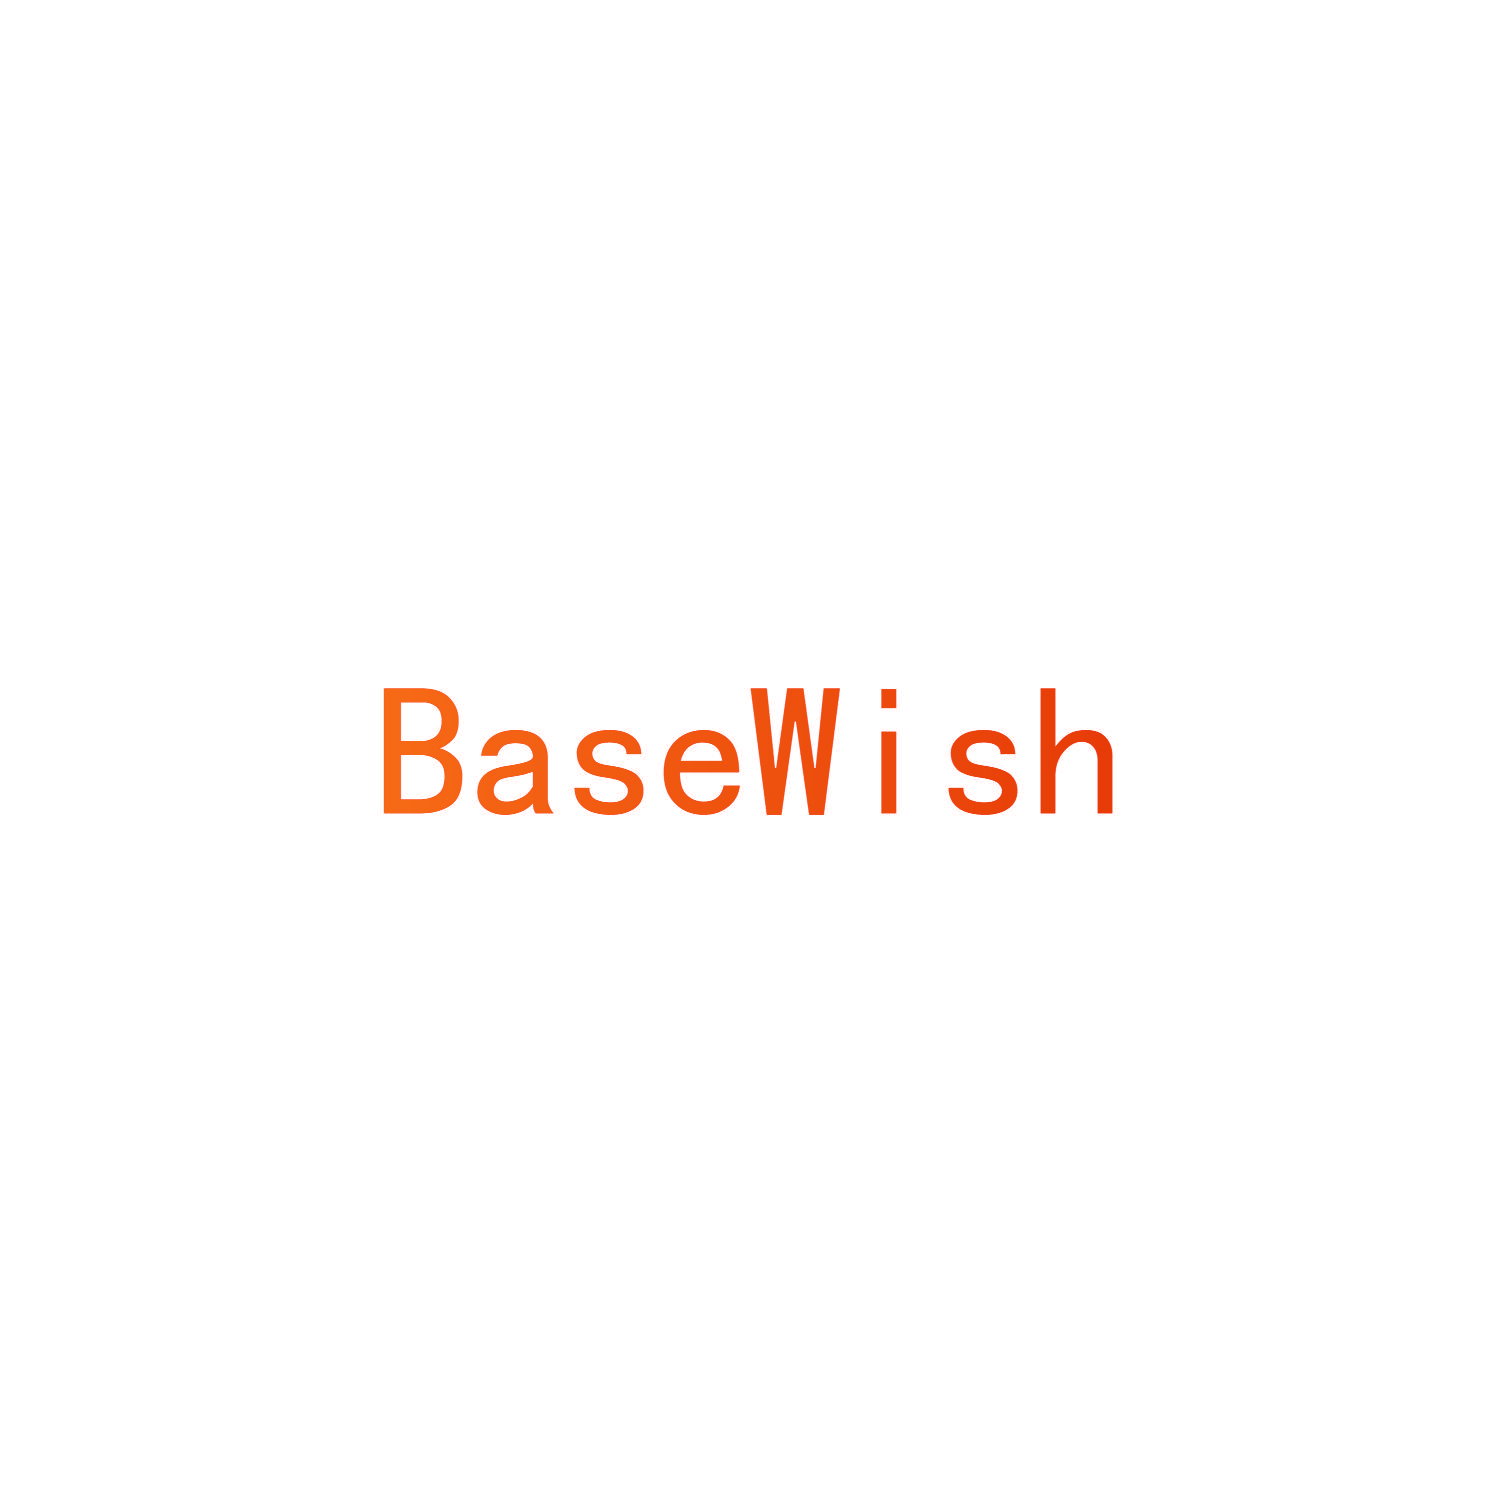 BASEWISH